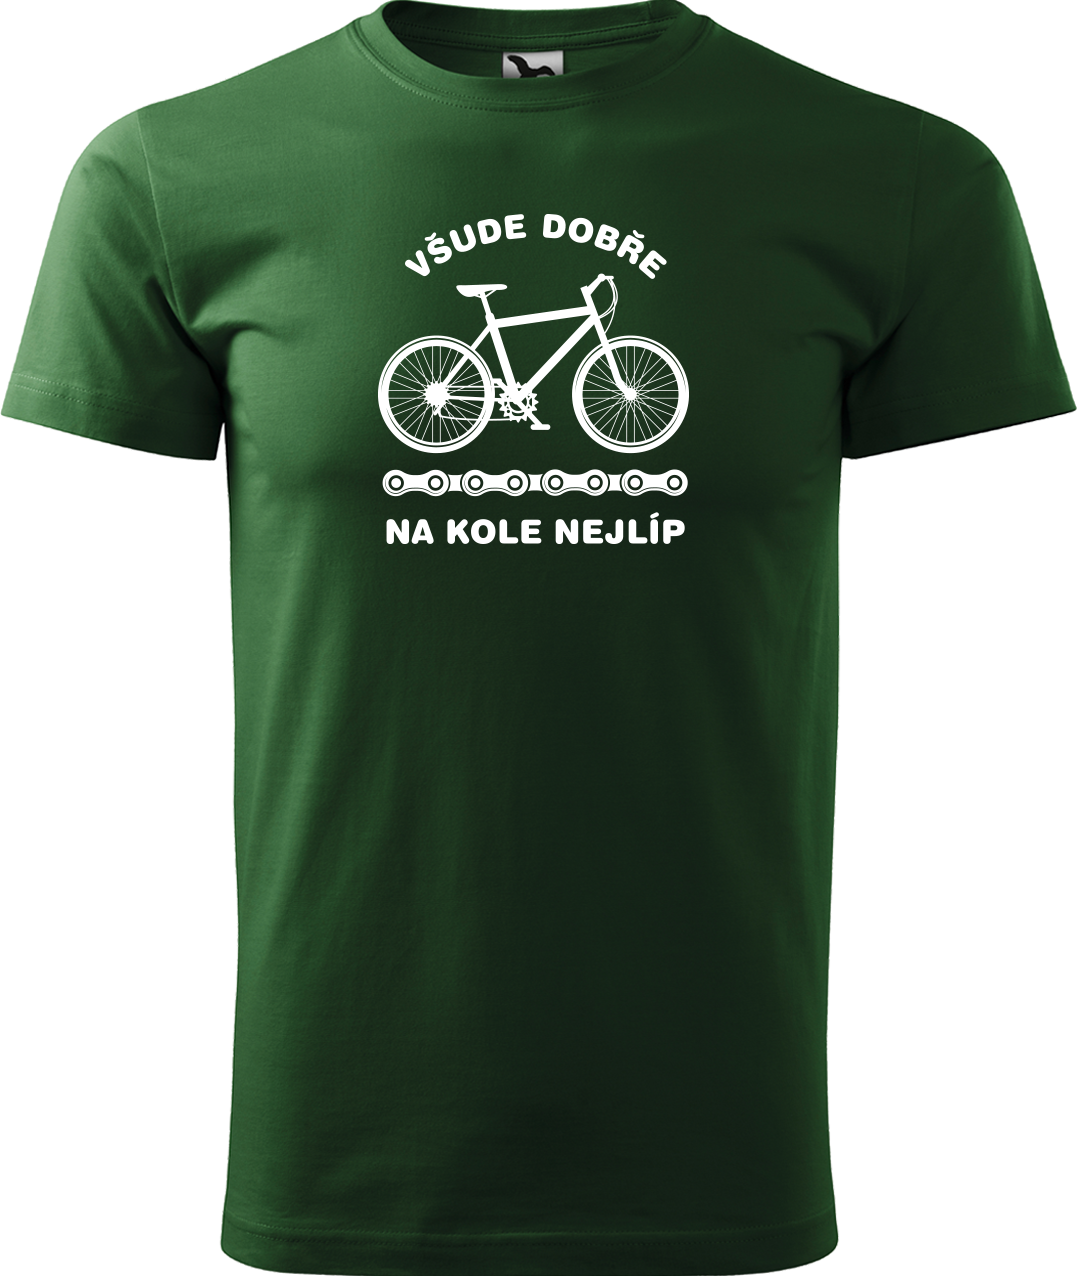 Pánské tričko s kolem - Všude dobře, na kole nejlíp Velikost: 3XL, Barva: Lahvově zelená (06)